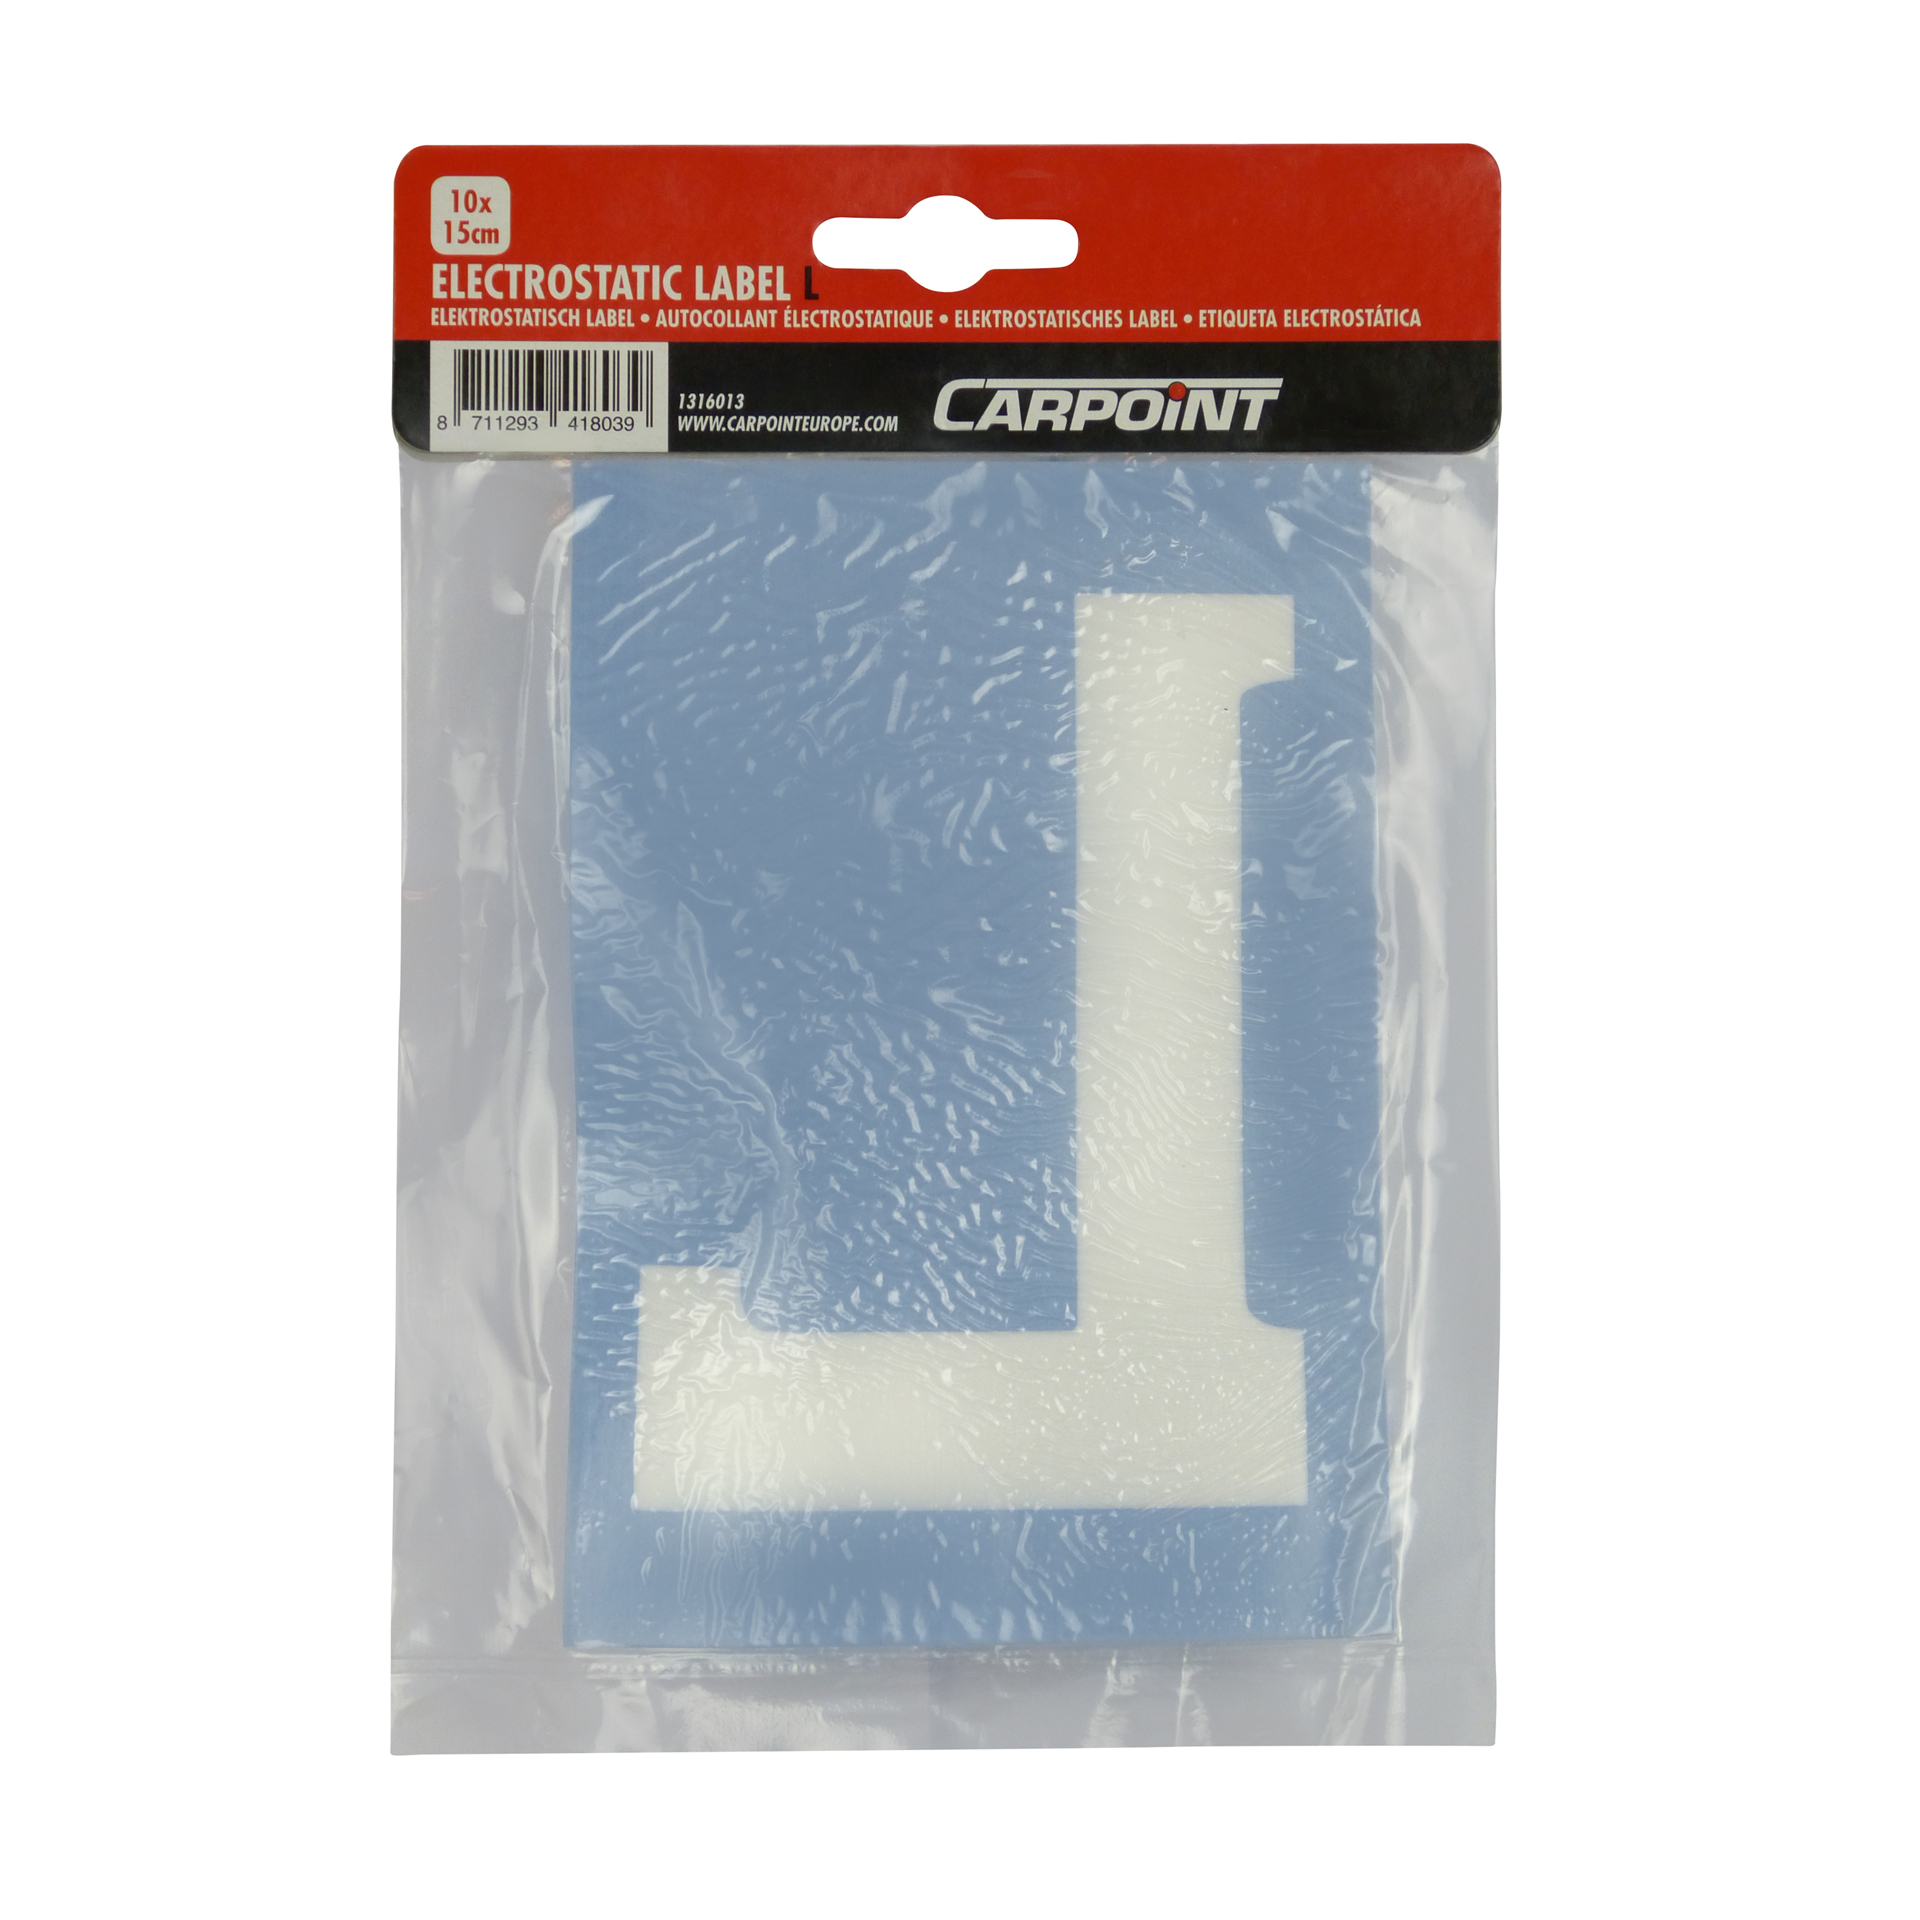 Carpoint Carpoint Electrostatische Sticker L 10x15cm 1316013